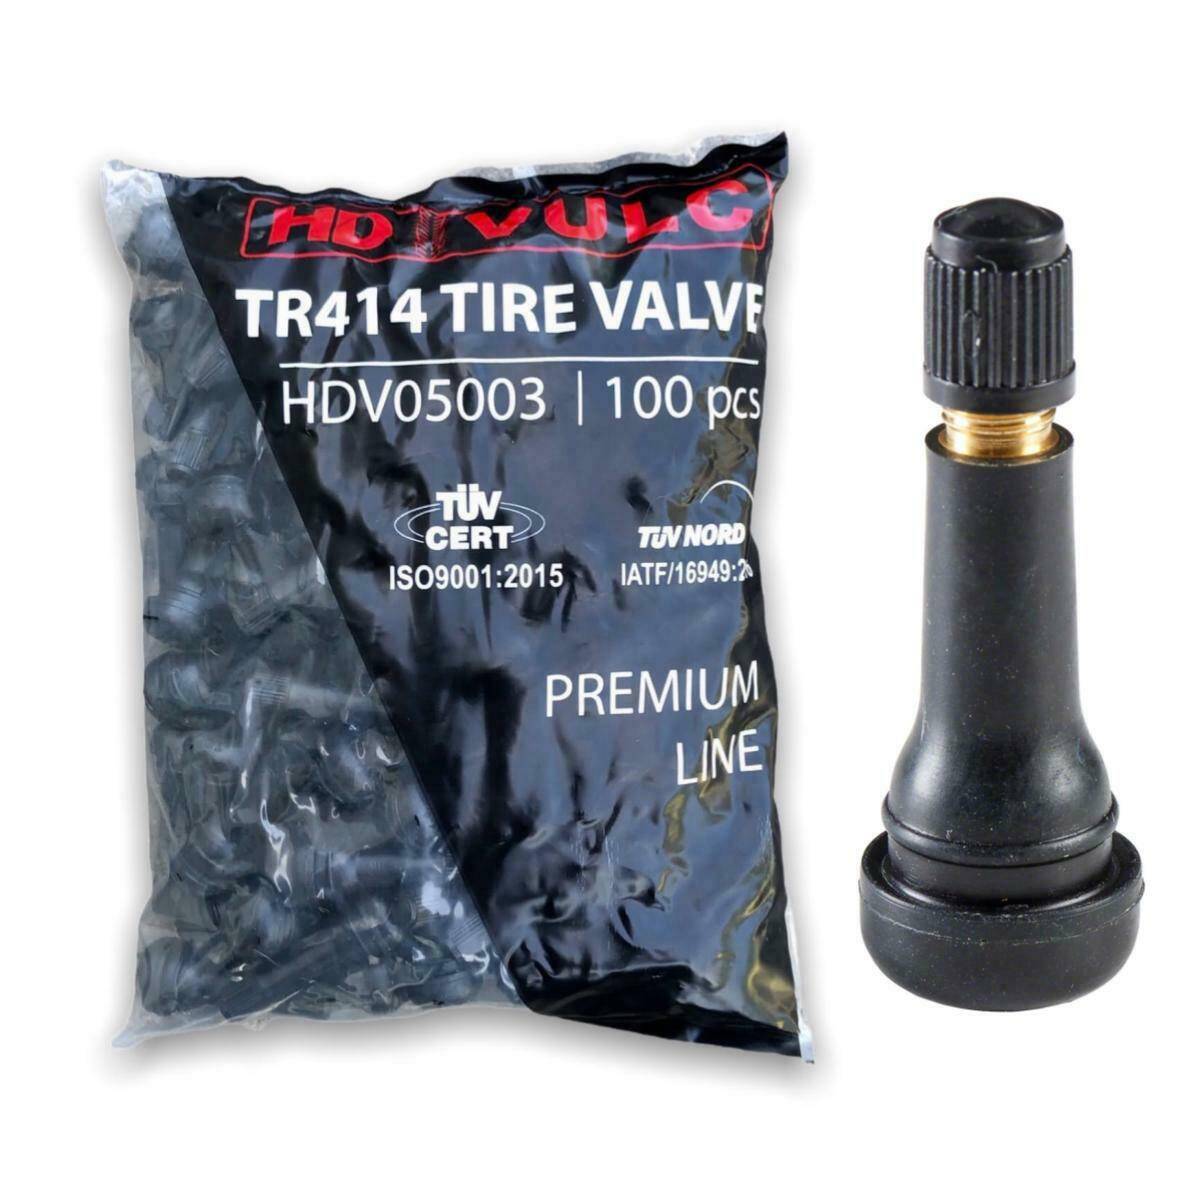 Snap-In tire valve TR414 HDVULC PREMIUM 